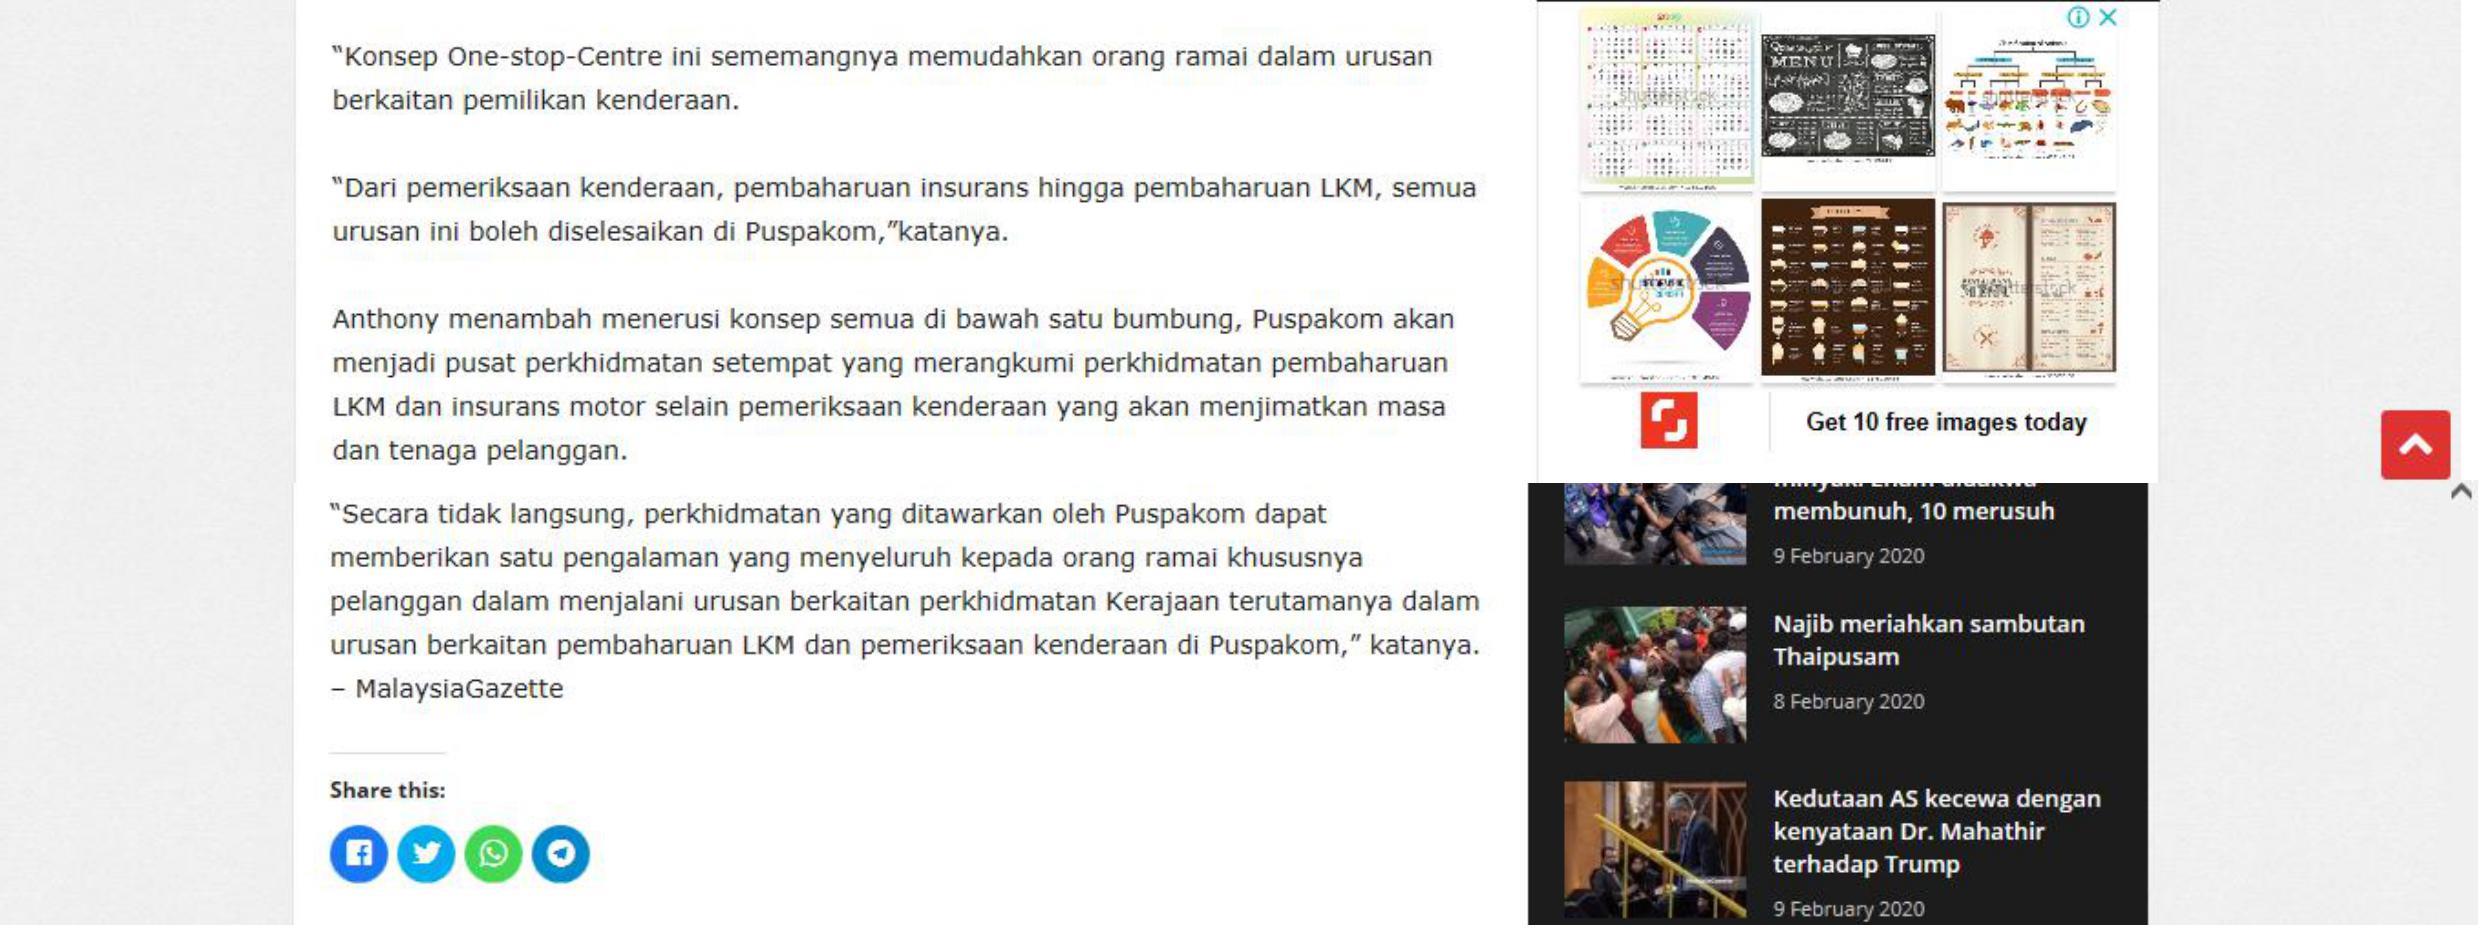 MalaysiaGazette.com_7.2_LKM kini boleh diperbaharui di Puspakom_2-2 rev